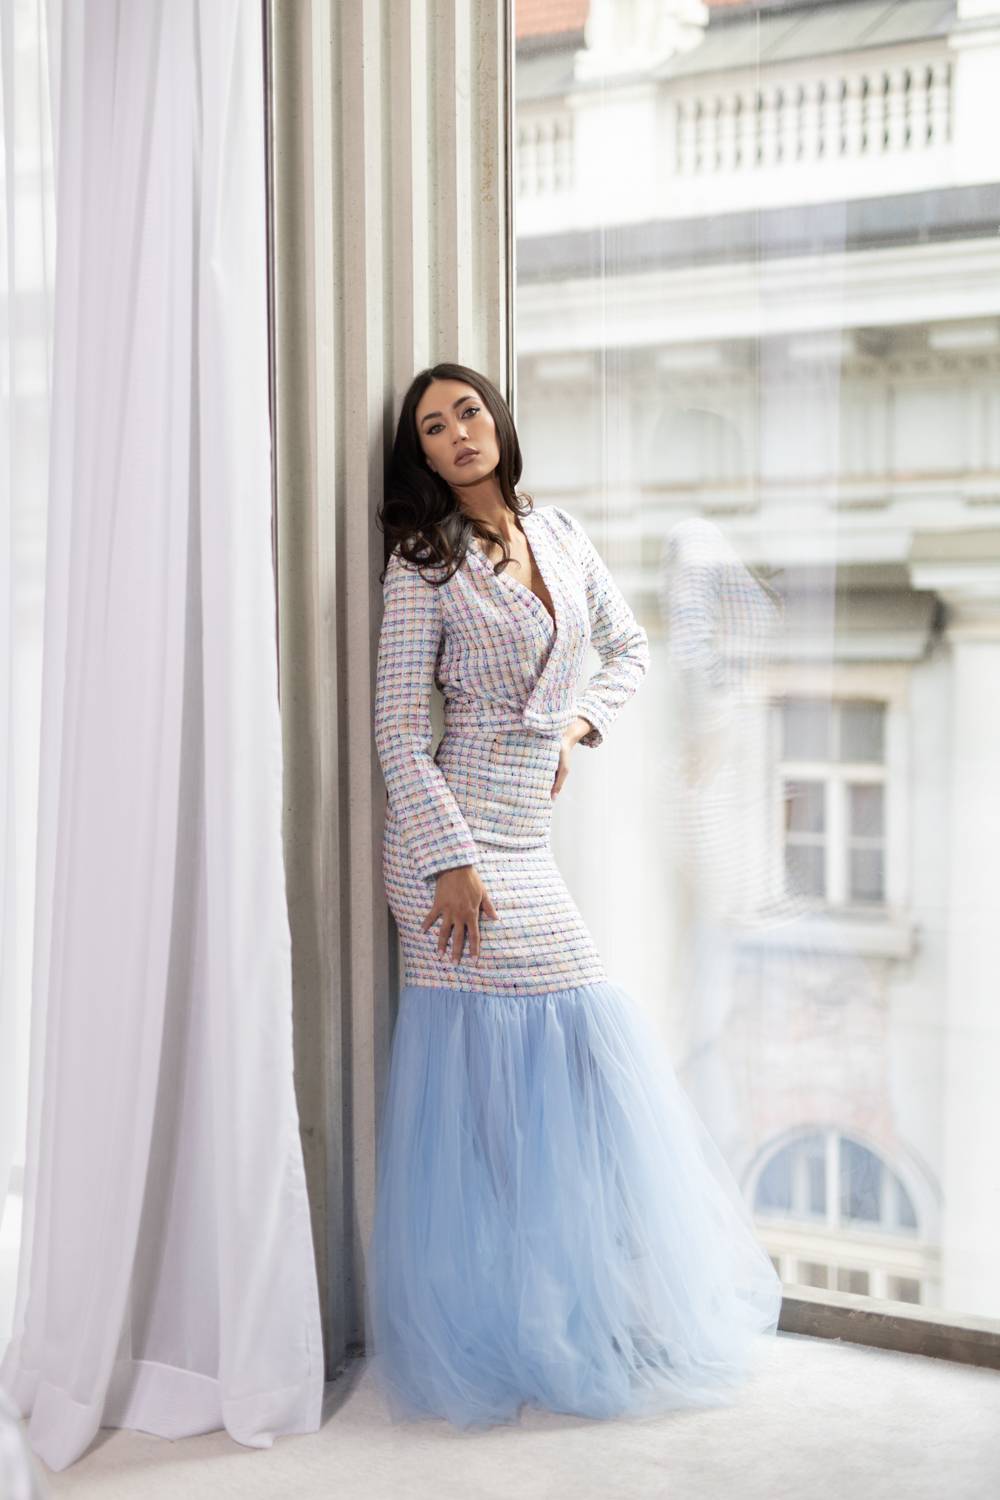 Nova kolekcija modnog brenda Duchess fantastičan je spoj održivosti i modne romantike